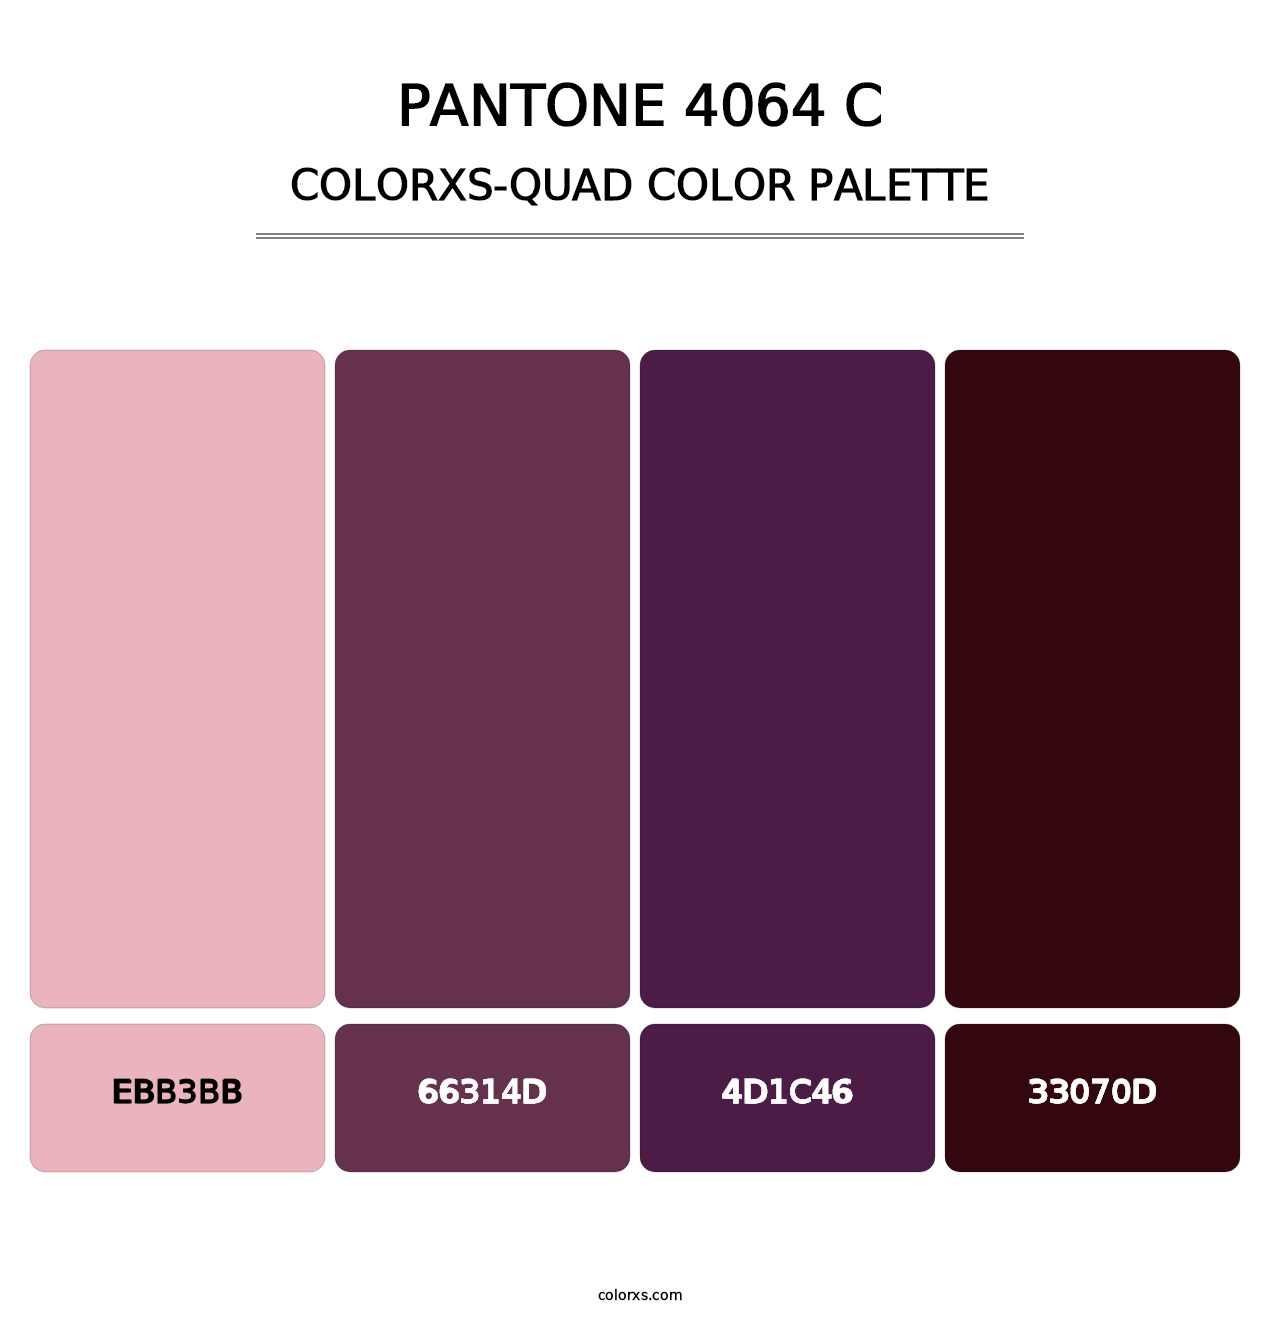 PANTONE 4064 C - Colorxs Quad Palette